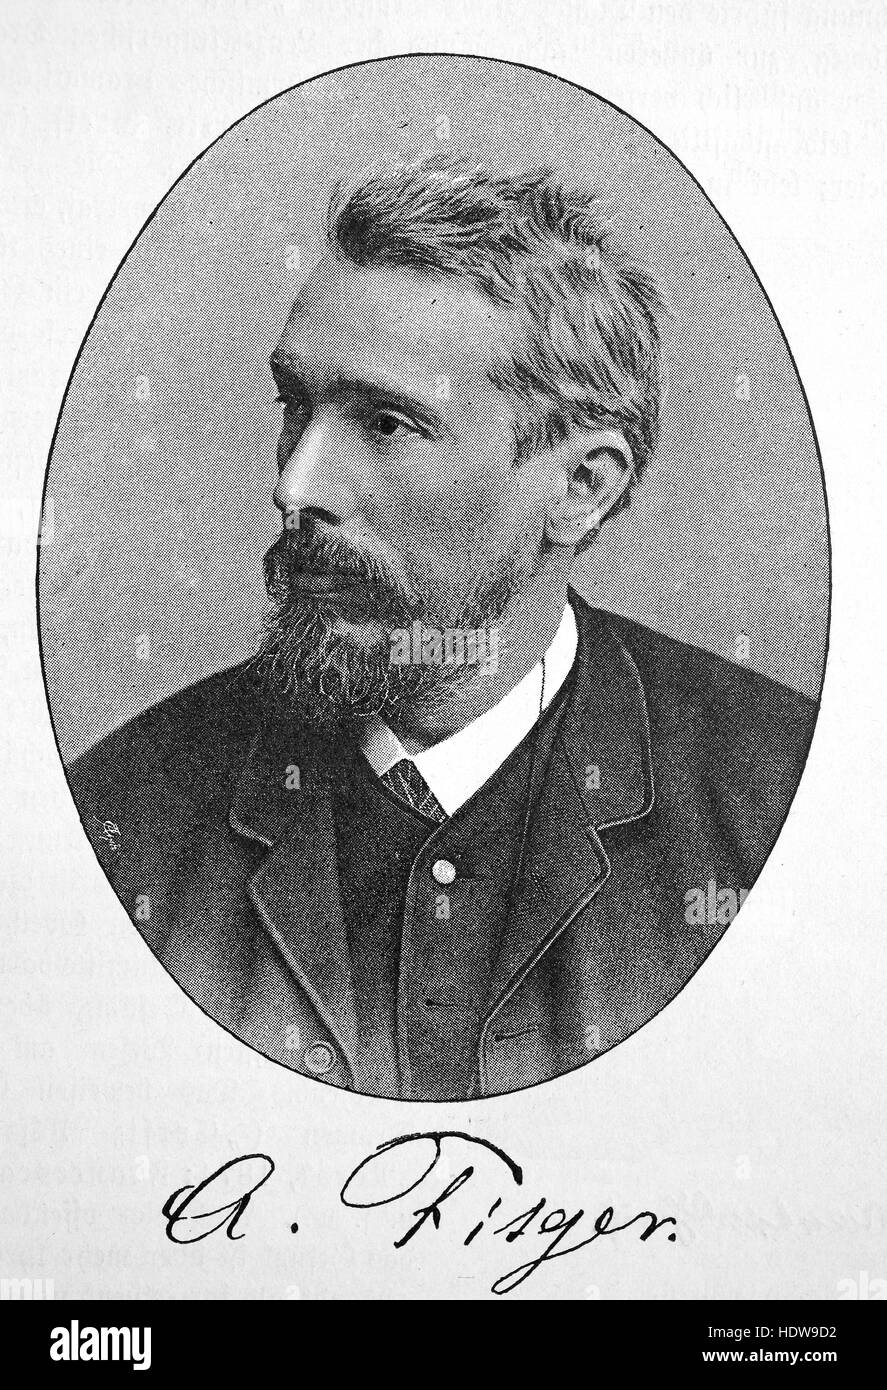 Arthur Heinrich Wilhelm Fitger, 1840-1909, deutscher Maler, Kunstkritiker, Dramatiker und Dichter, Holzschnitt aus dem Jahr 1880 Stockfoto